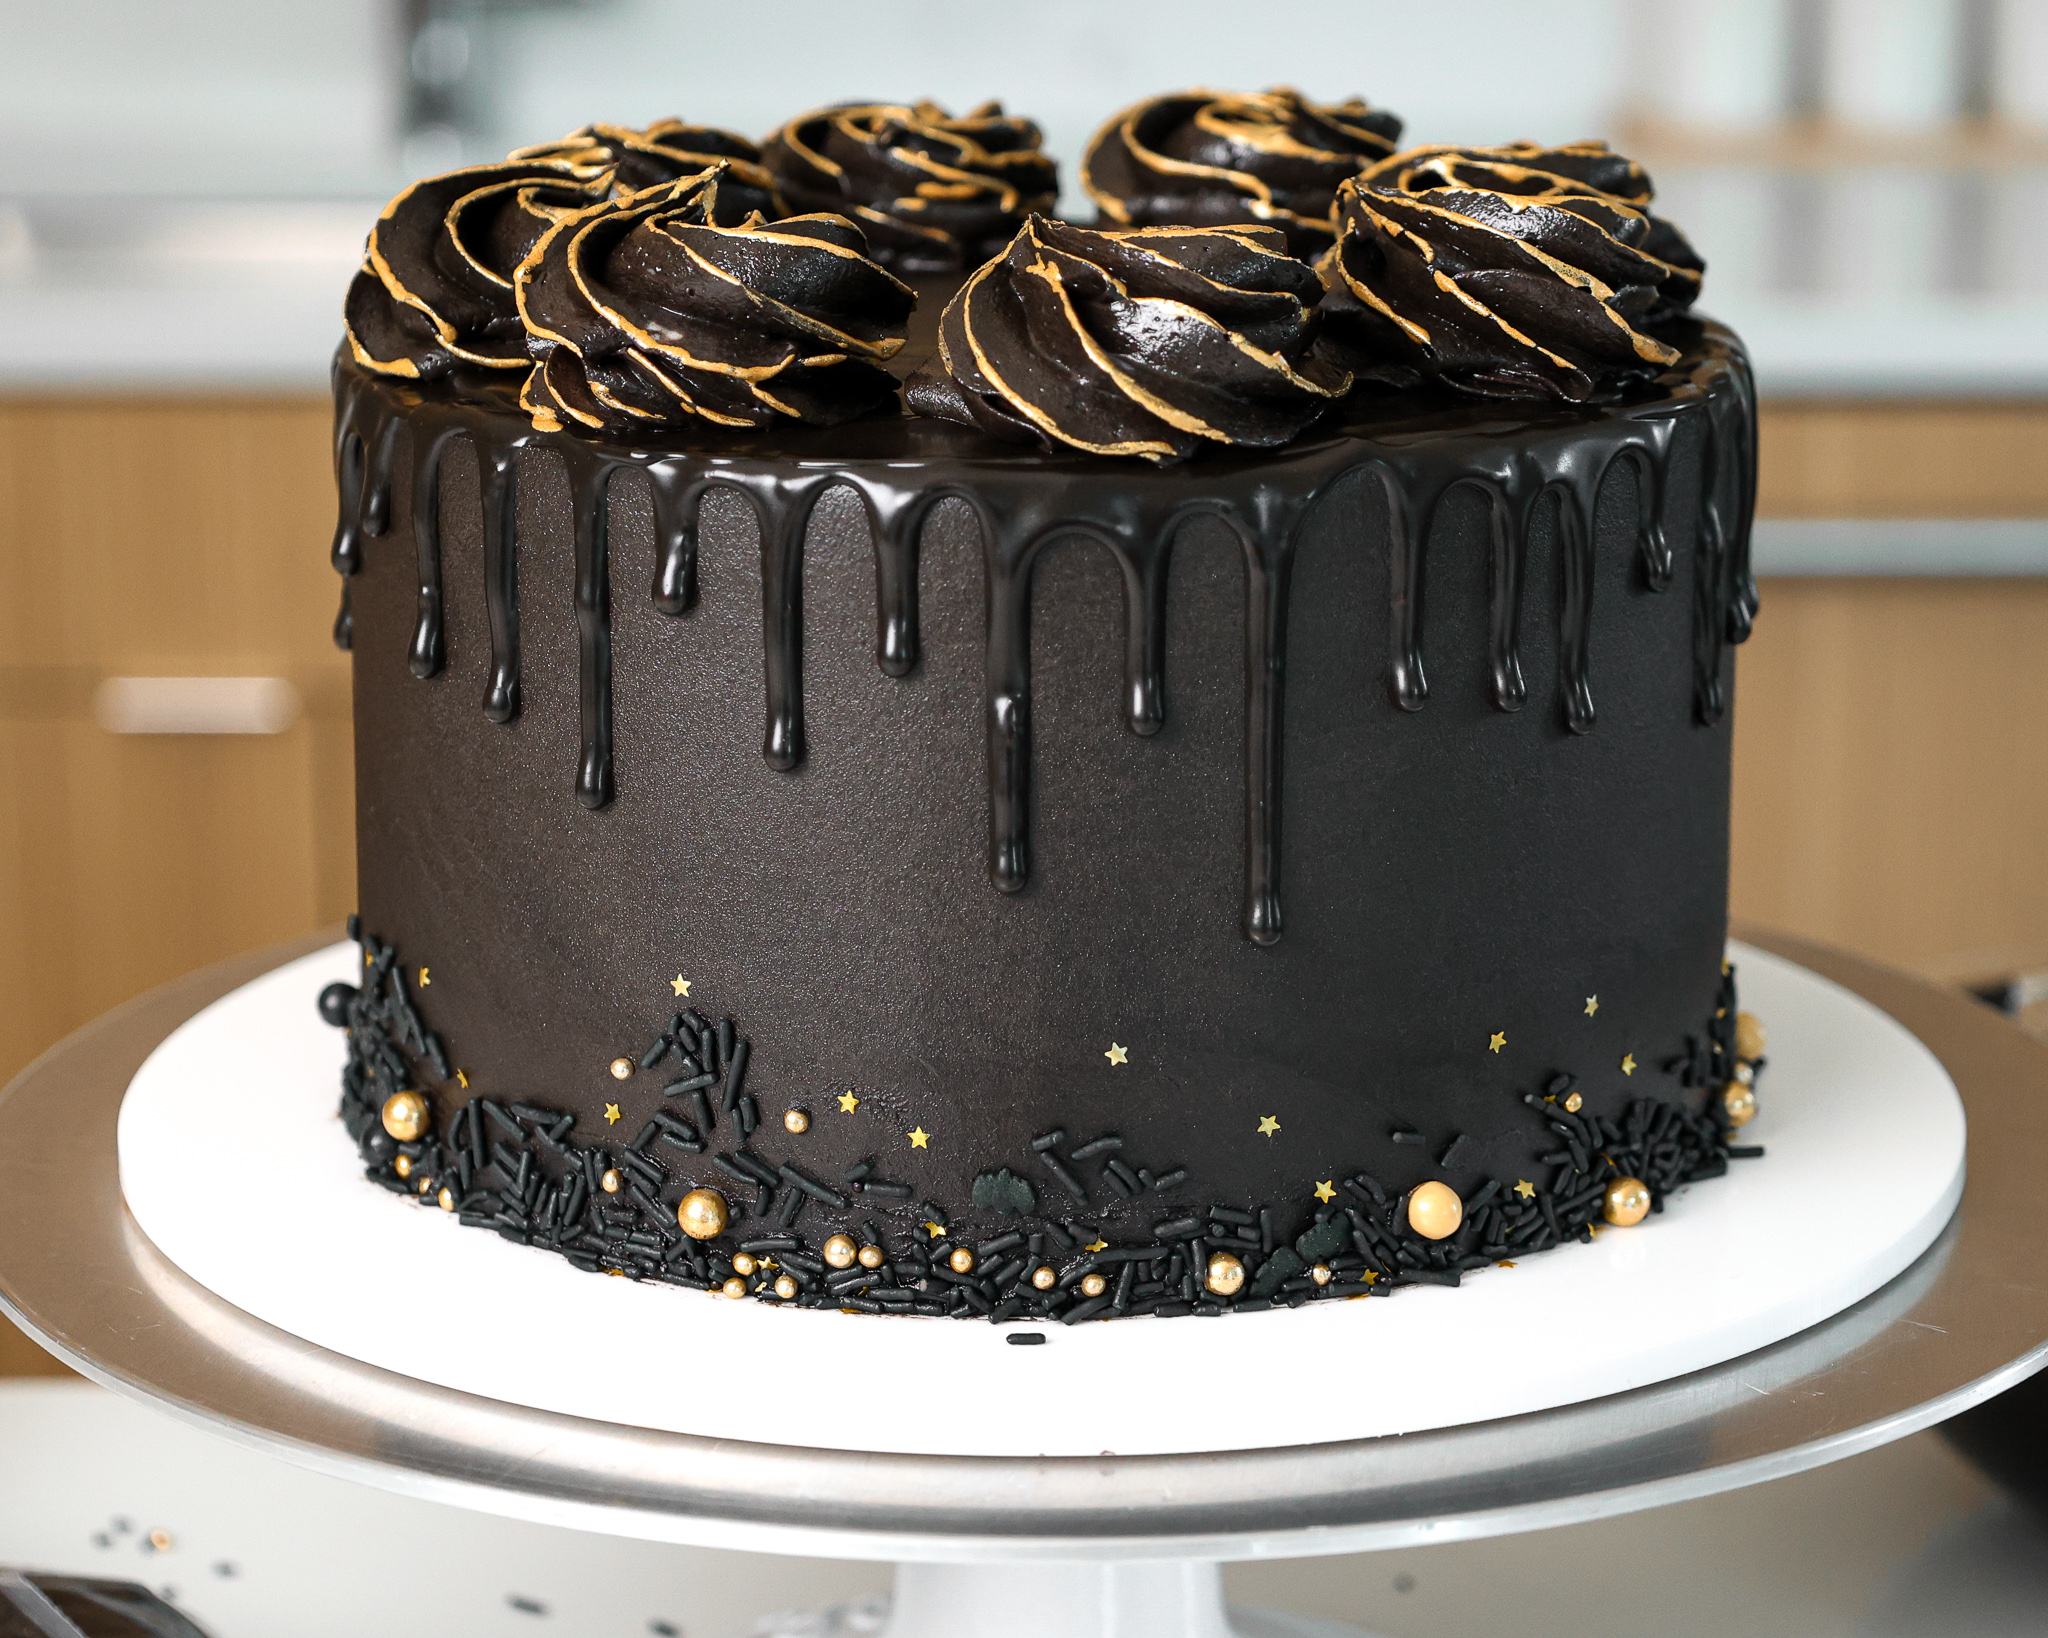 Black Magic Cake | My Baking Addiction